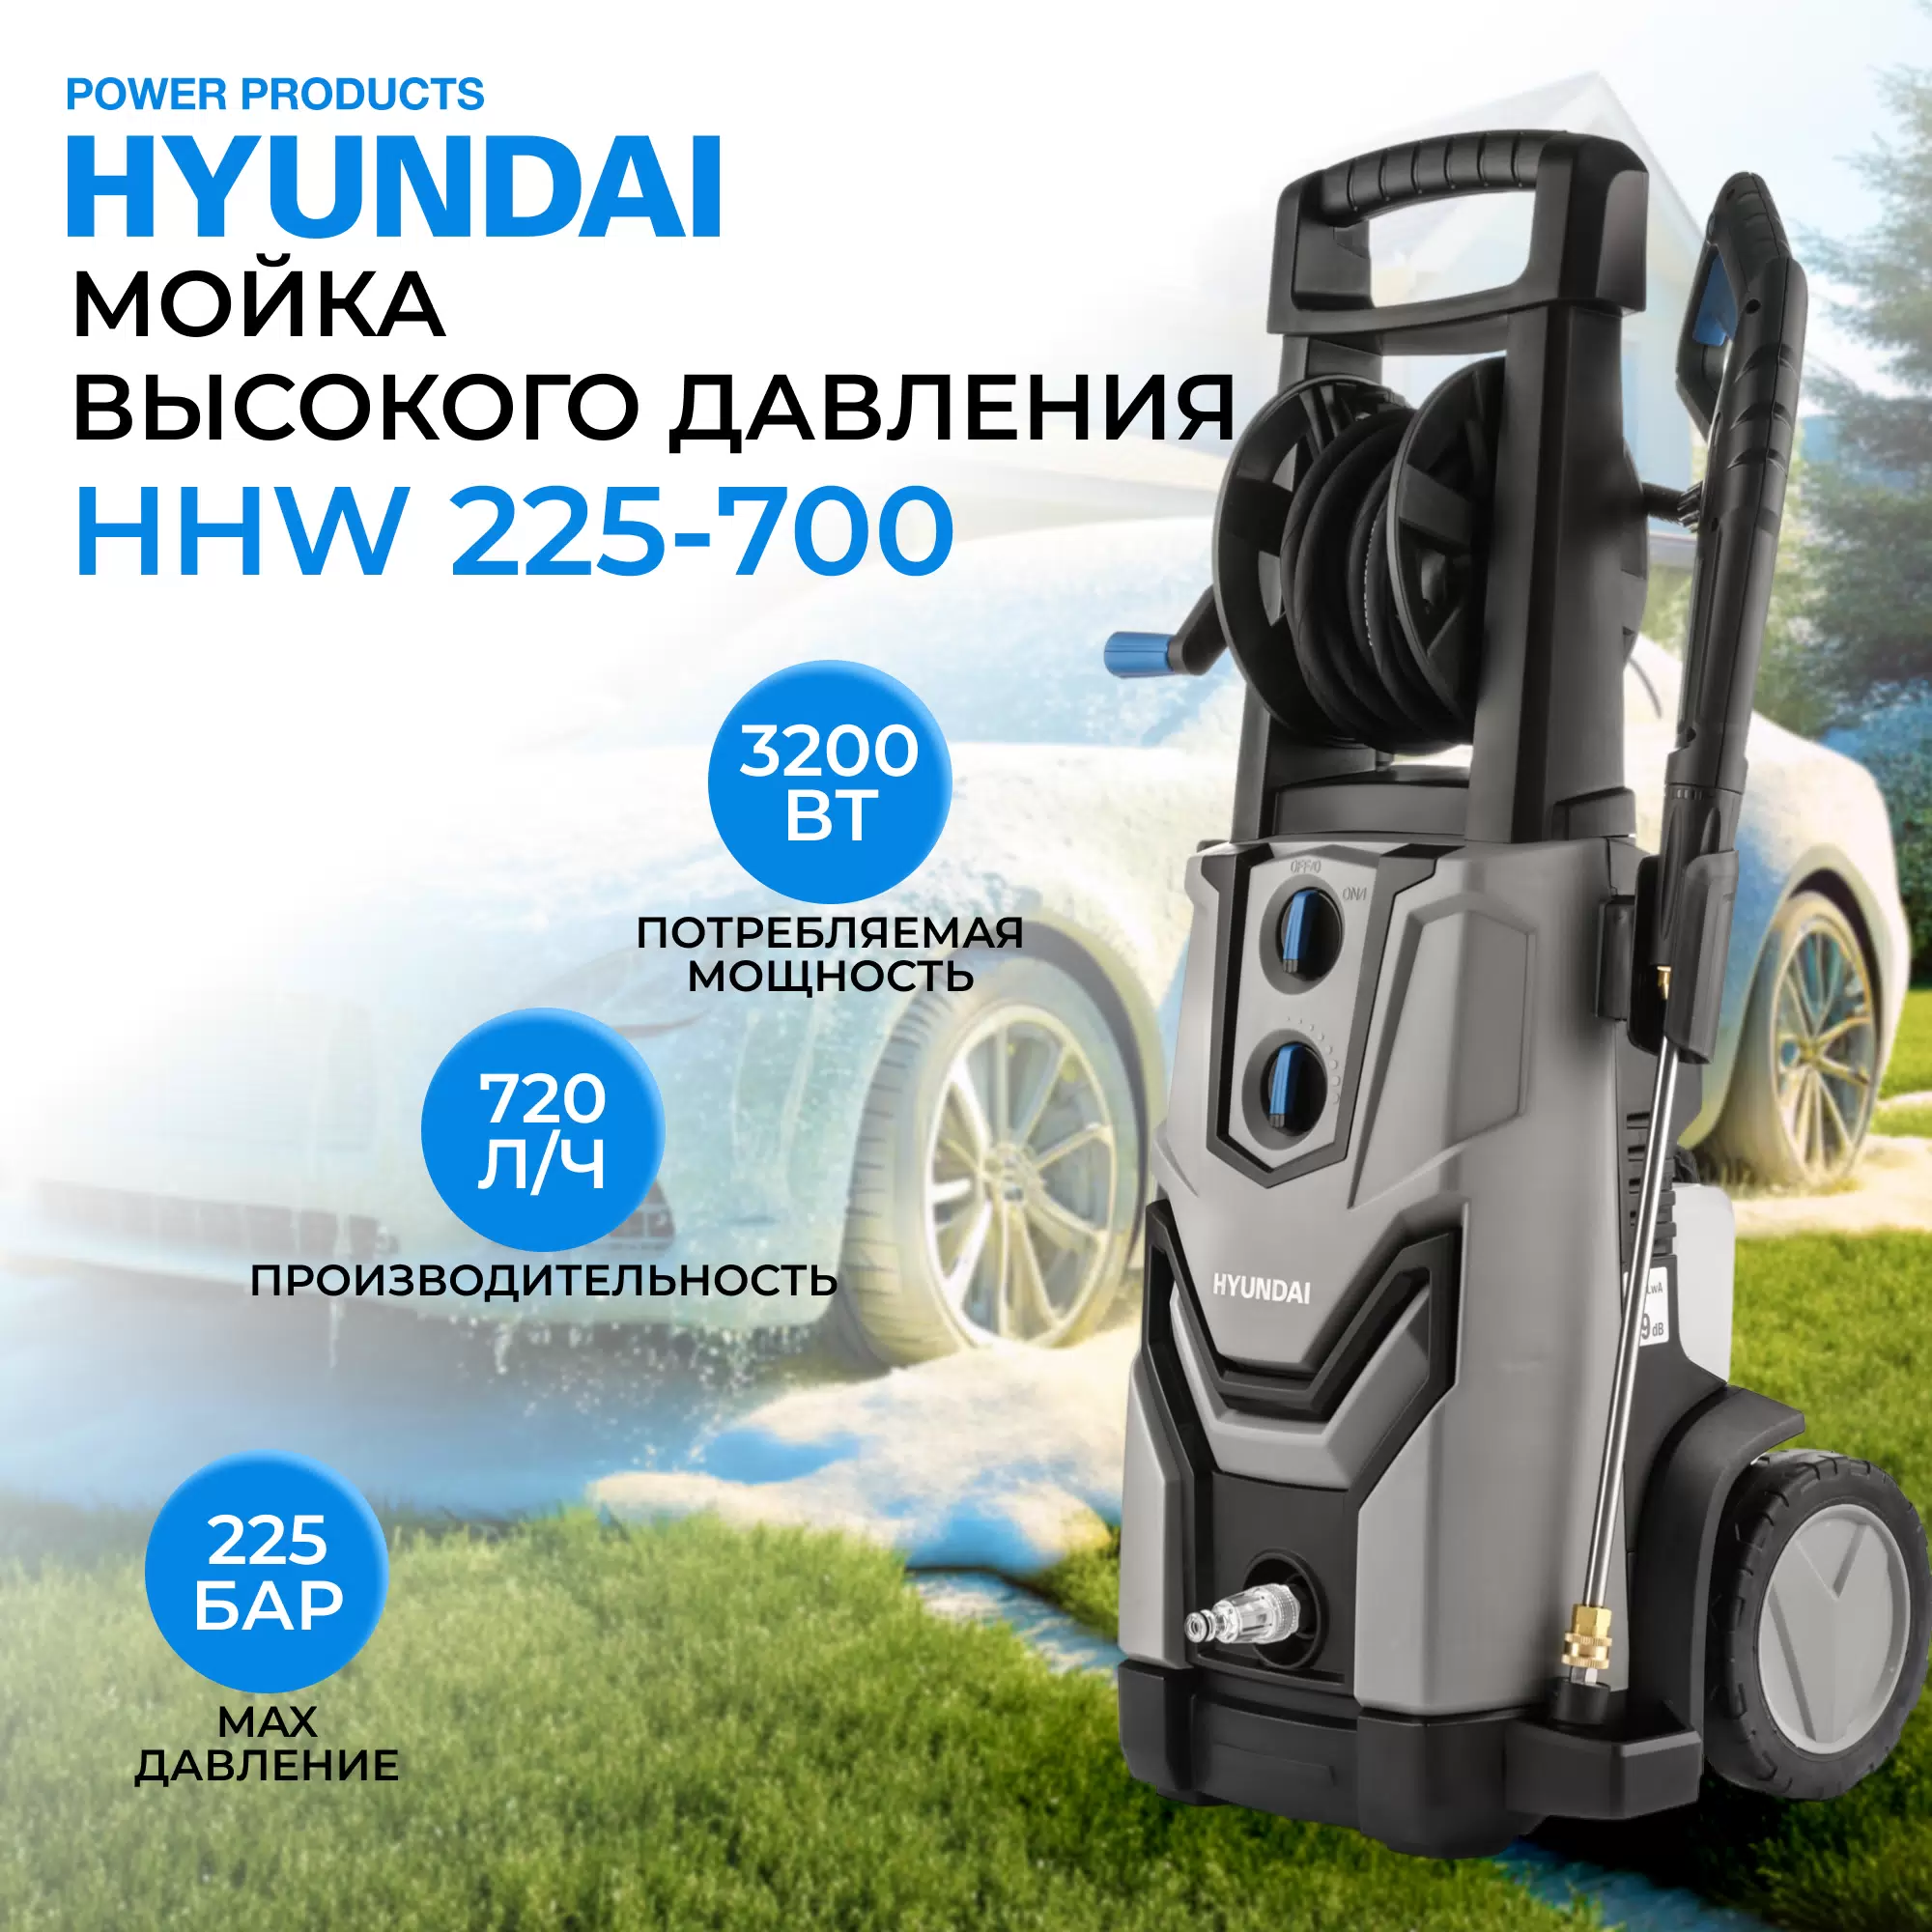 Мойка высокого давления Hyundai HHW 225-700 (720л/ч, 3200Вт, механический фильтр) - VLARNIKA в Донецке